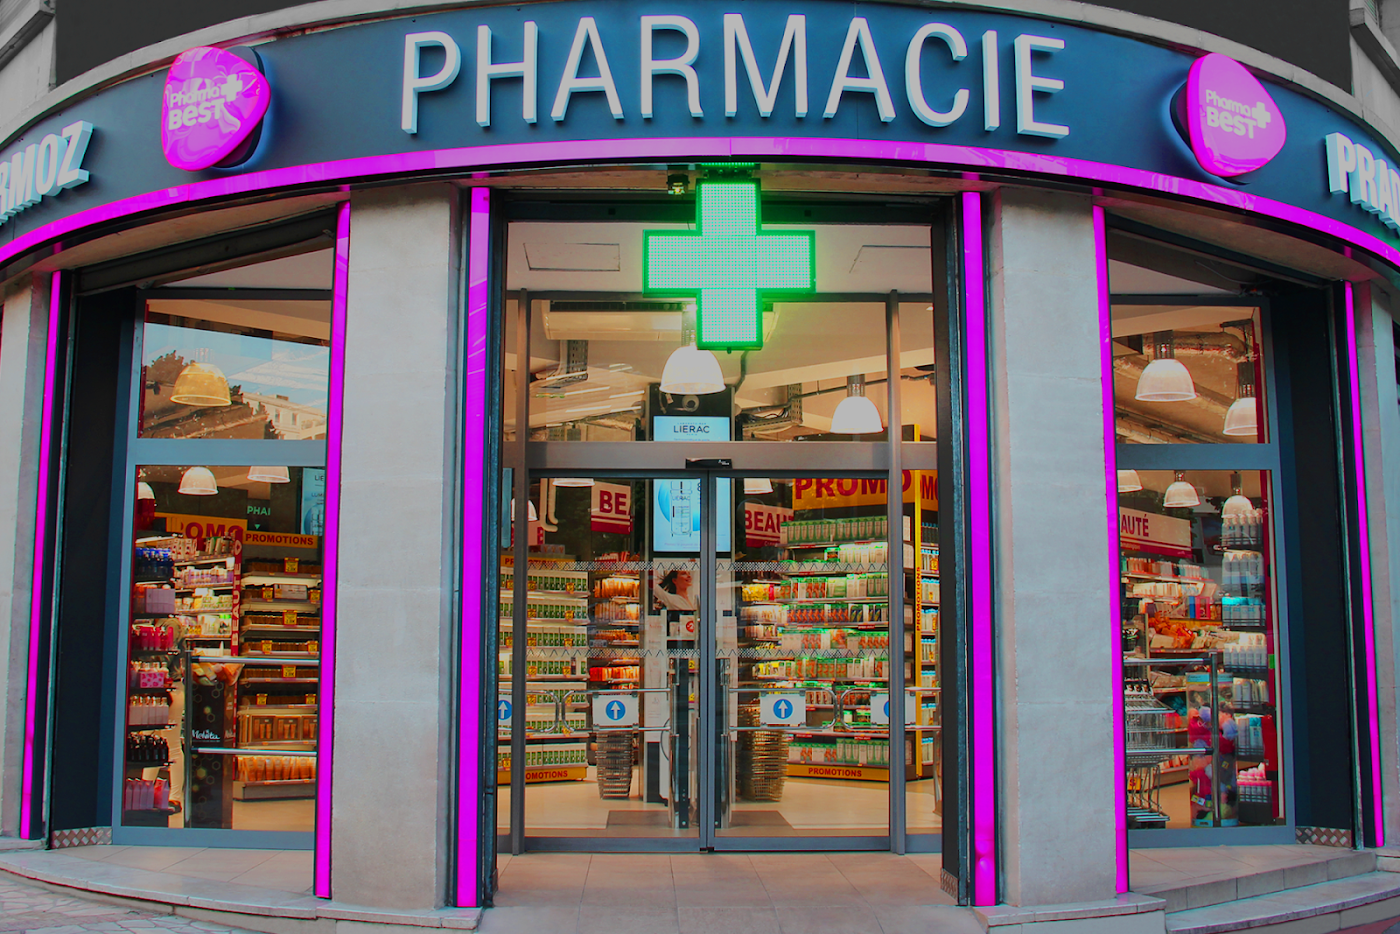 Pharmacie Prado Mermoz